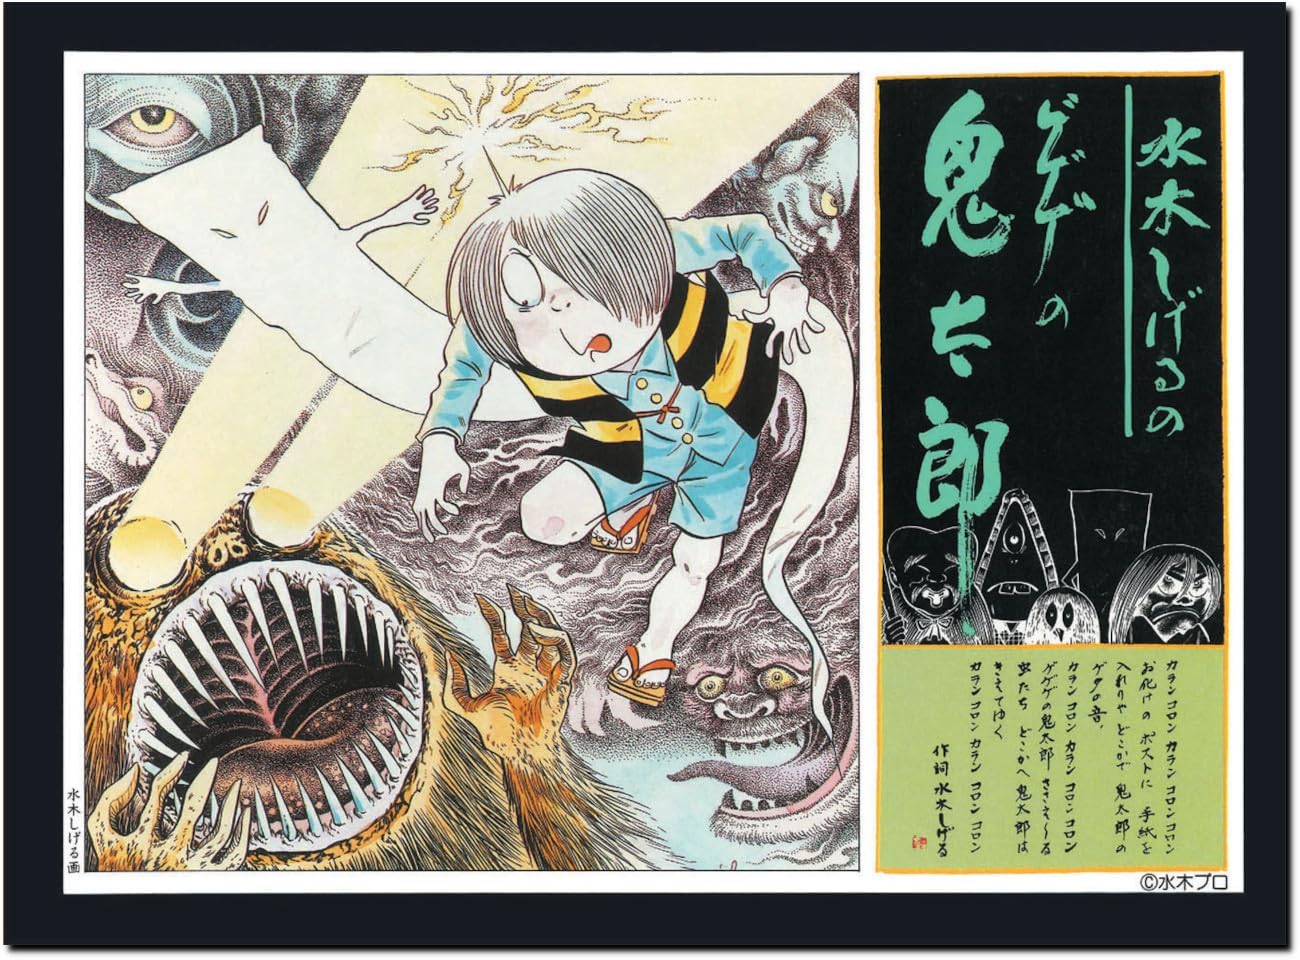 Doyusha Shigeru Mizuki GeGe no Kitaro (Ro) GeGeGe no Kitaro, Reprint Edition, Kitaro, Plastic Model